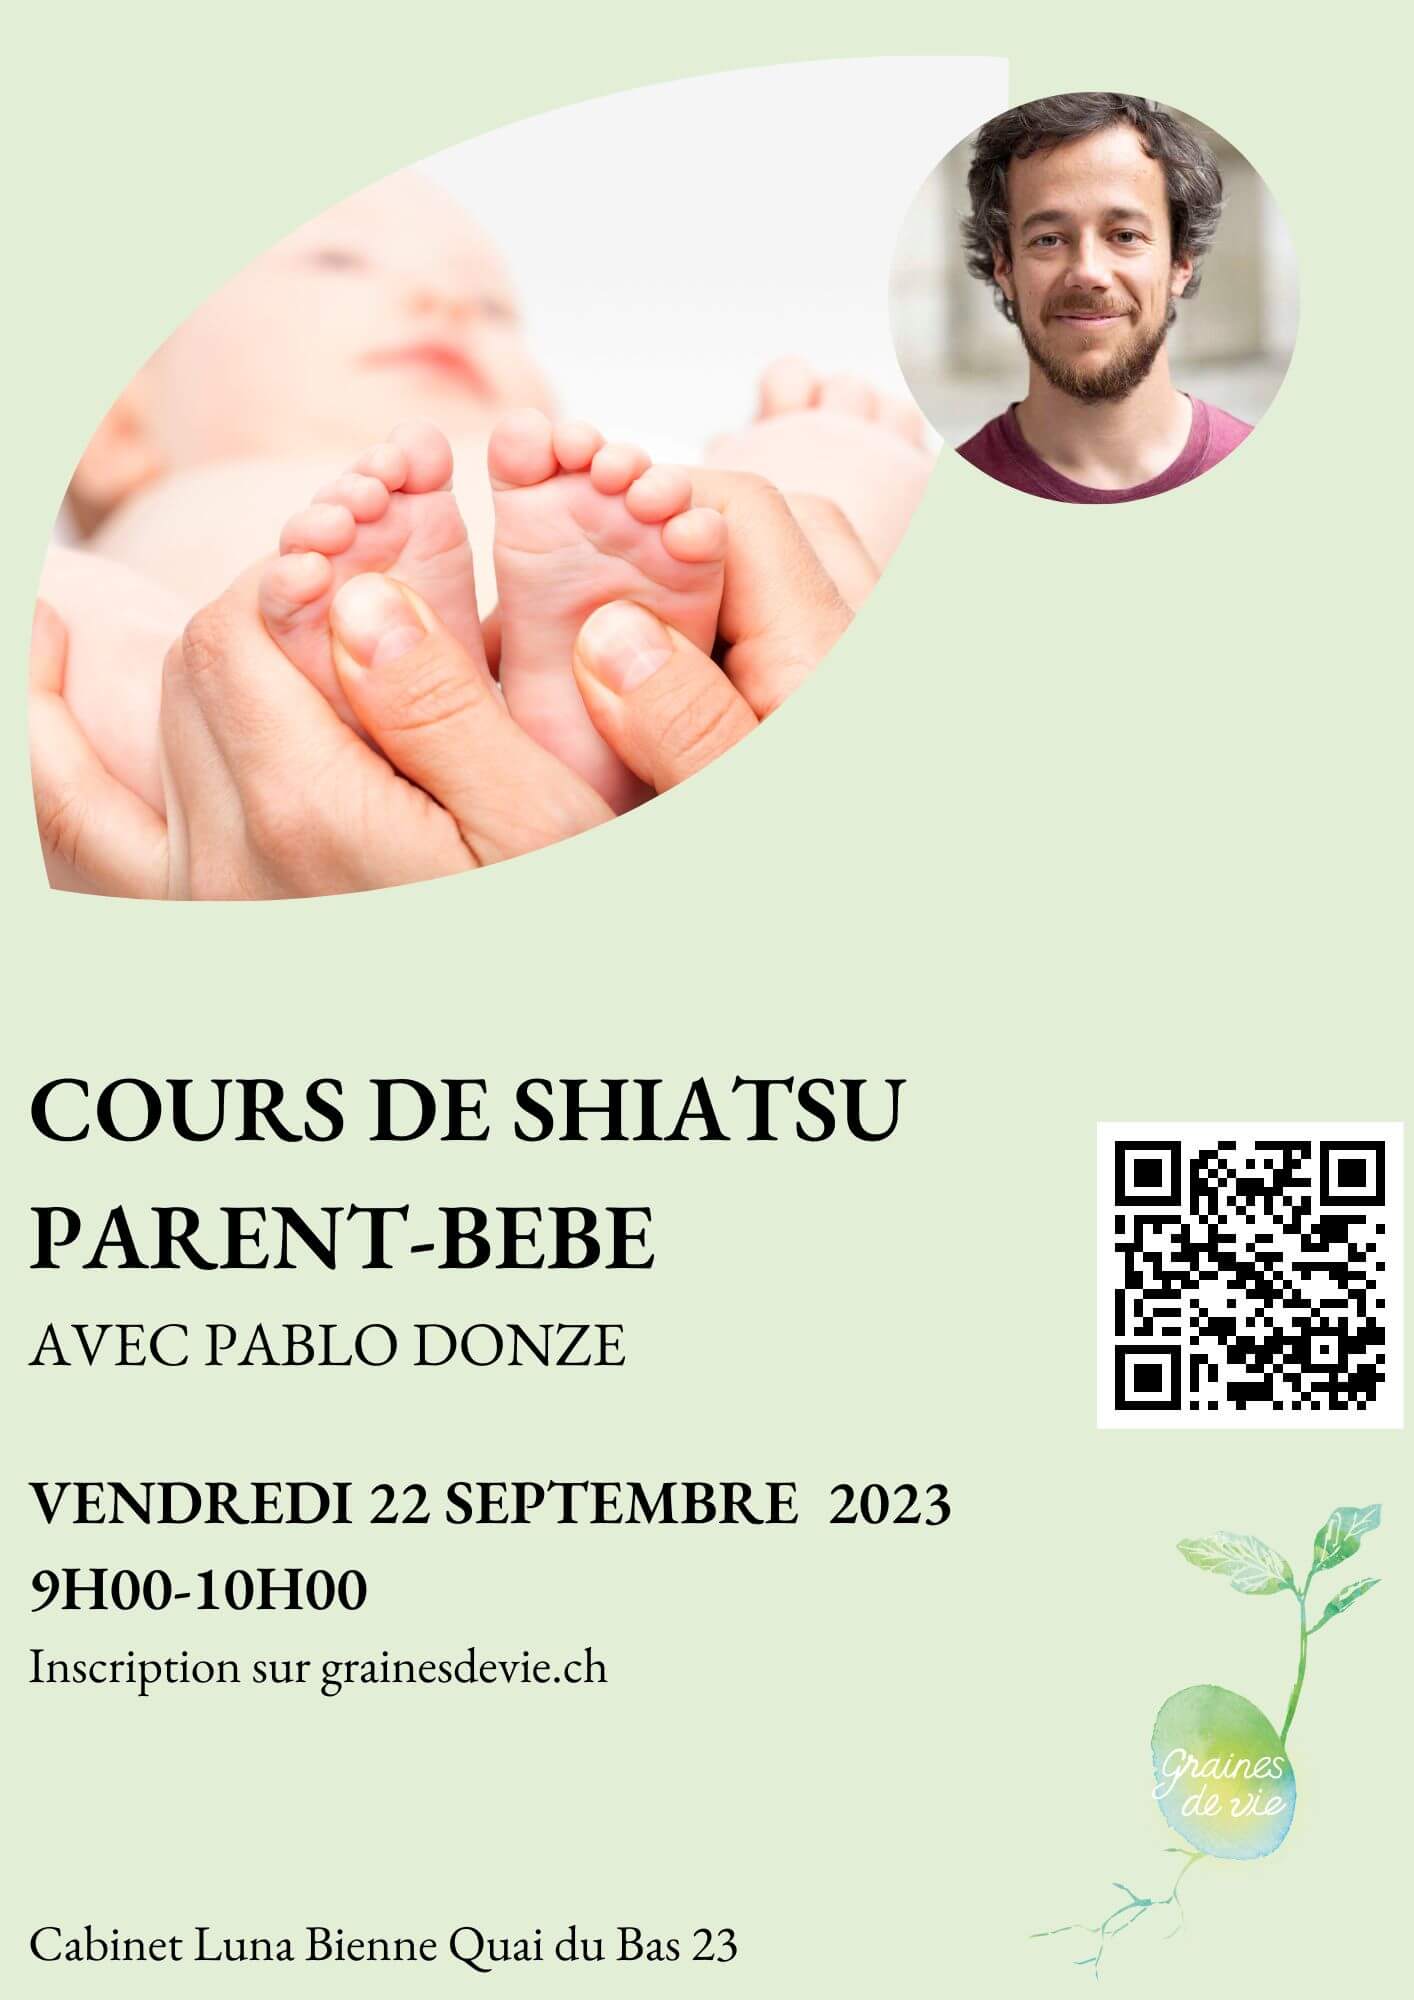 COURS DE SHIATSU PARENTS-BEBE